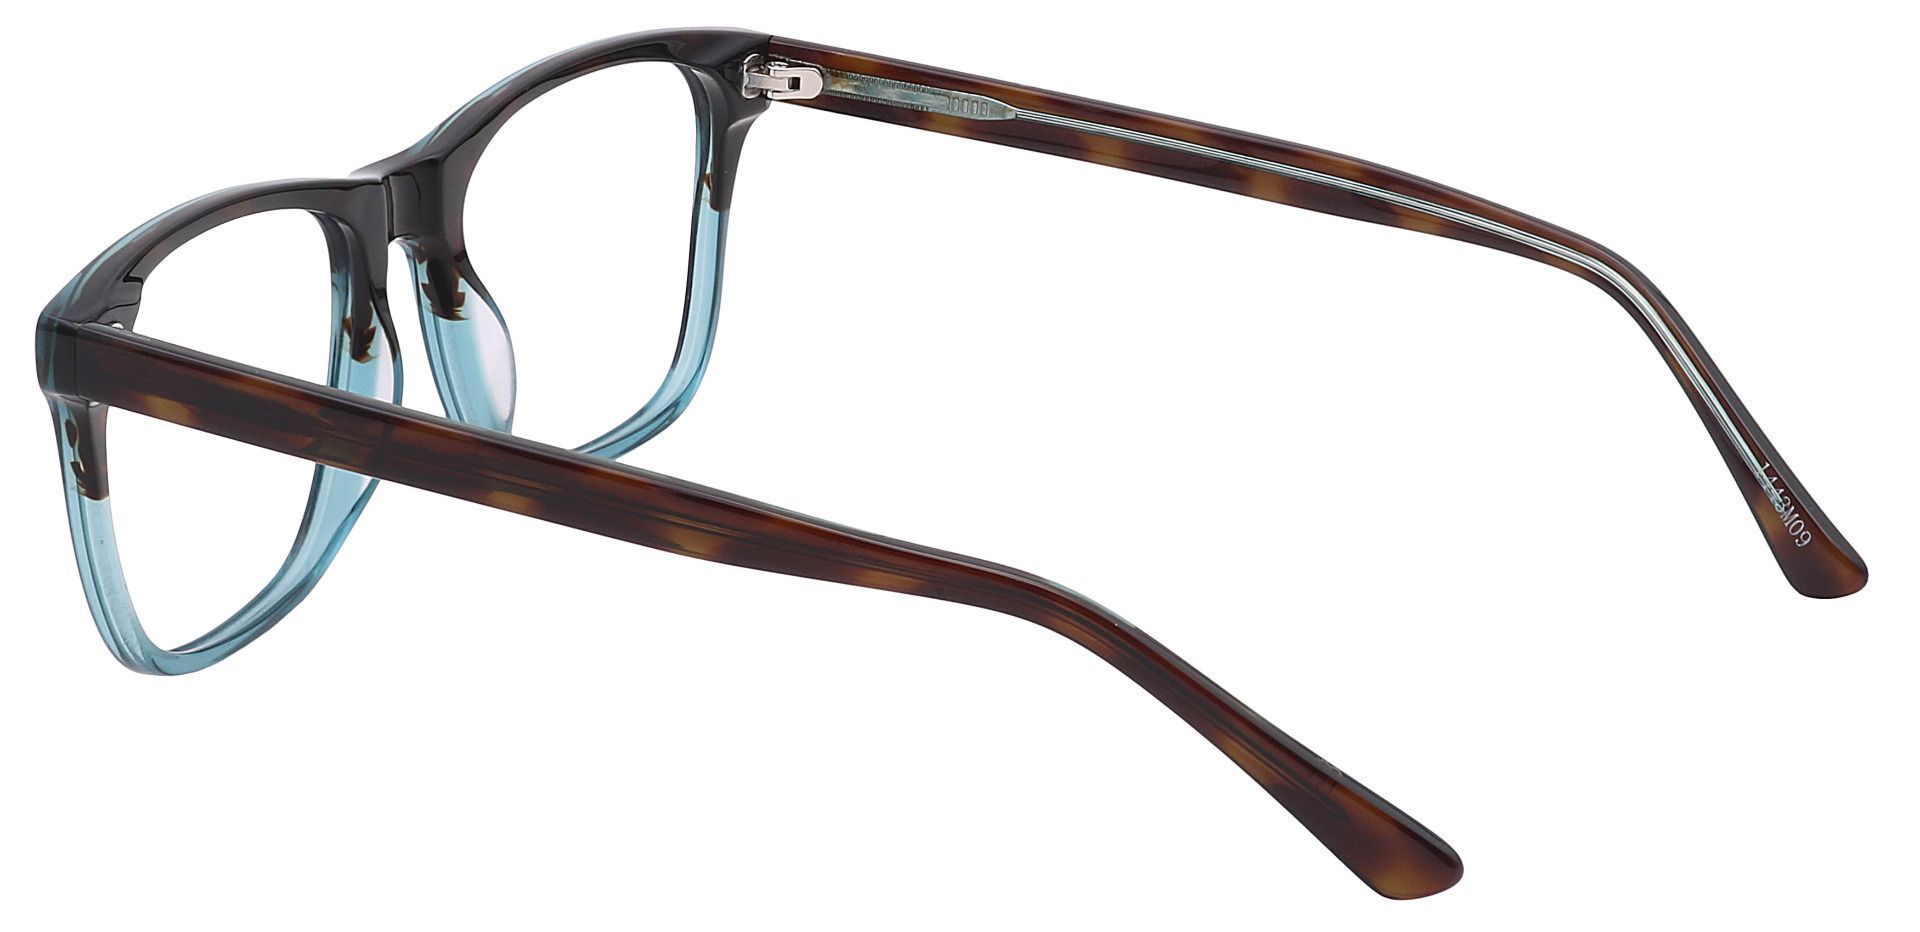 Cantina Square Progressive Glasses - Two